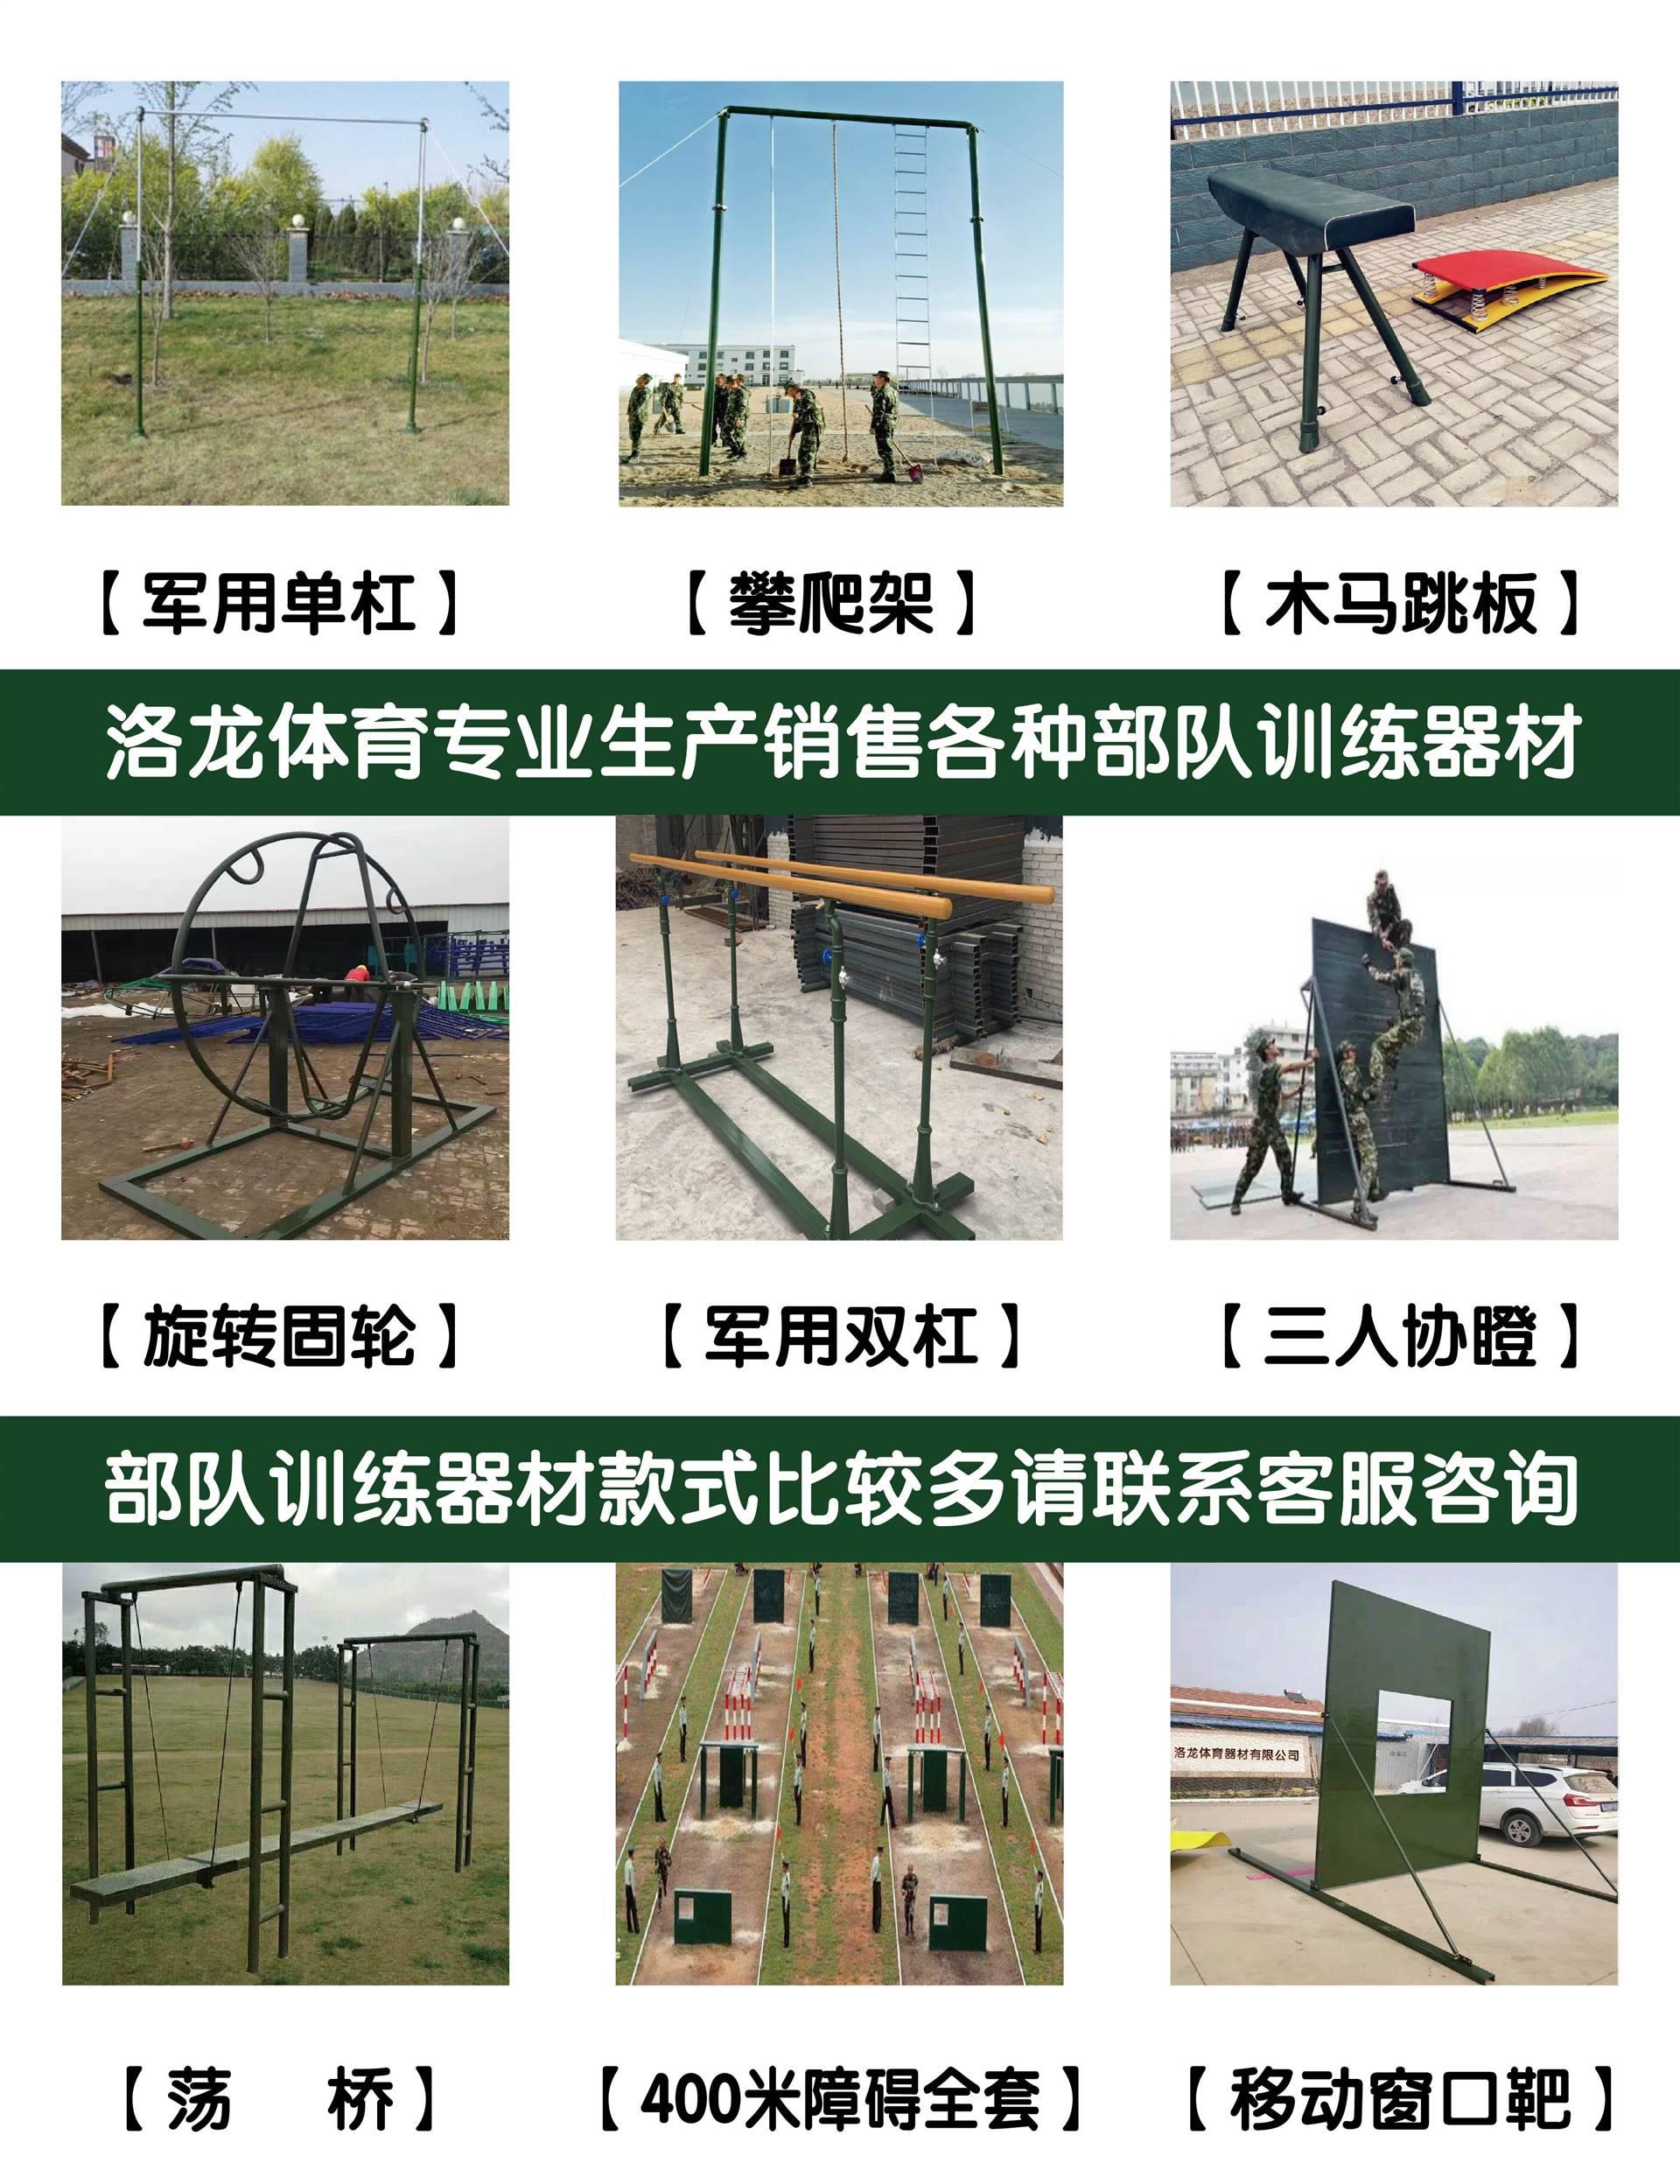 部队院校用:广东揭阳部队攀爬训练架子多少钱